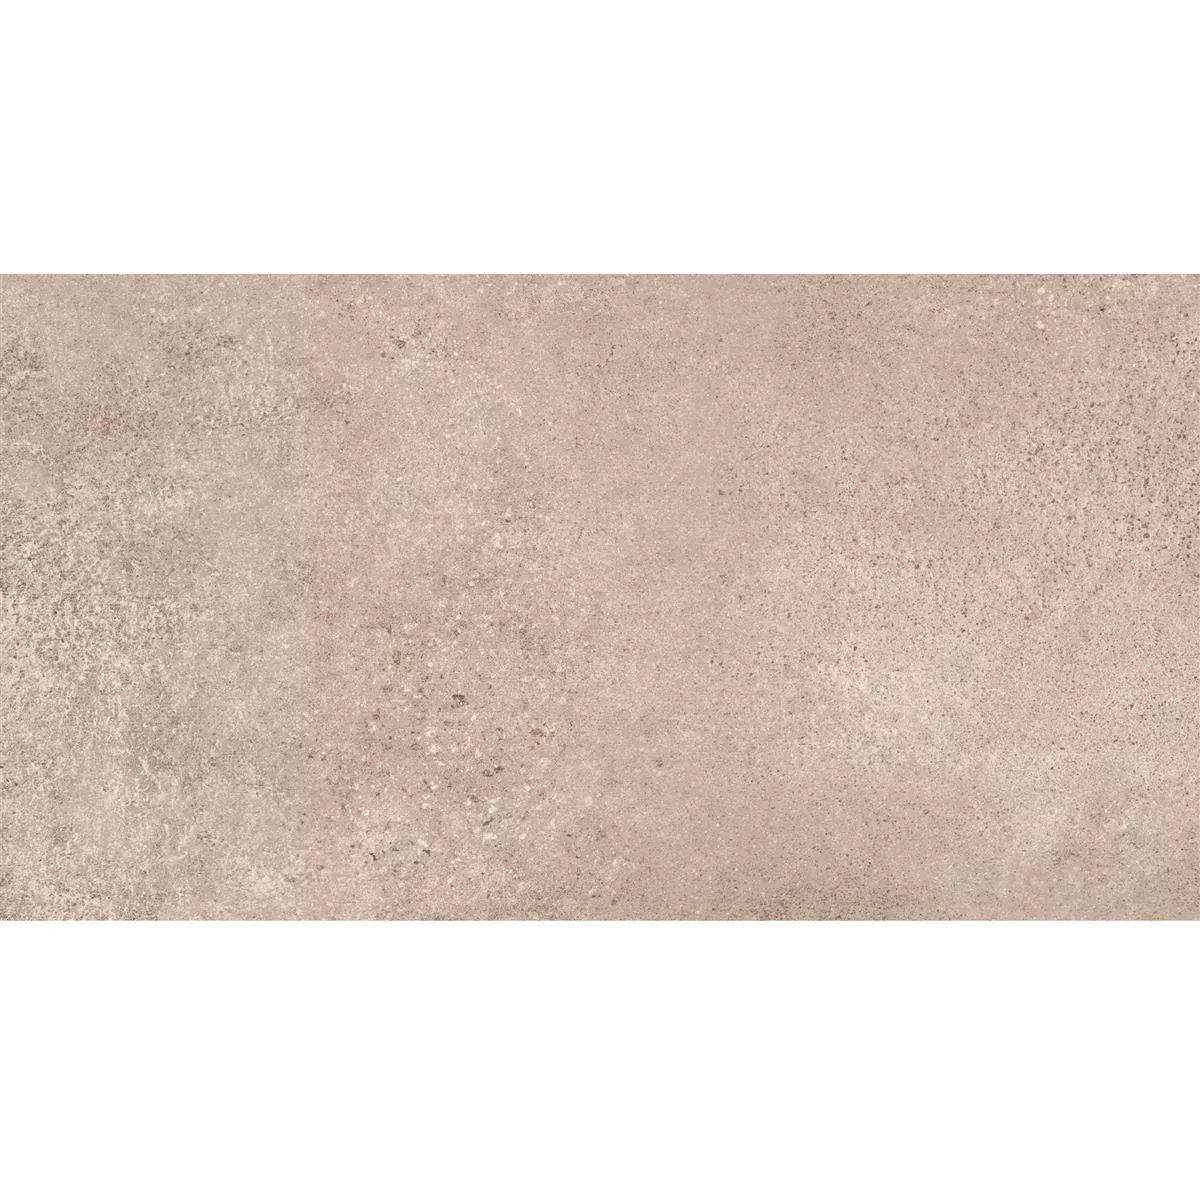 Πλακάκια Δαπέδου Πέτρινη Όψη Riad Παγωμένος R9 Ανοιχτό Kαφέ 30x60cm 